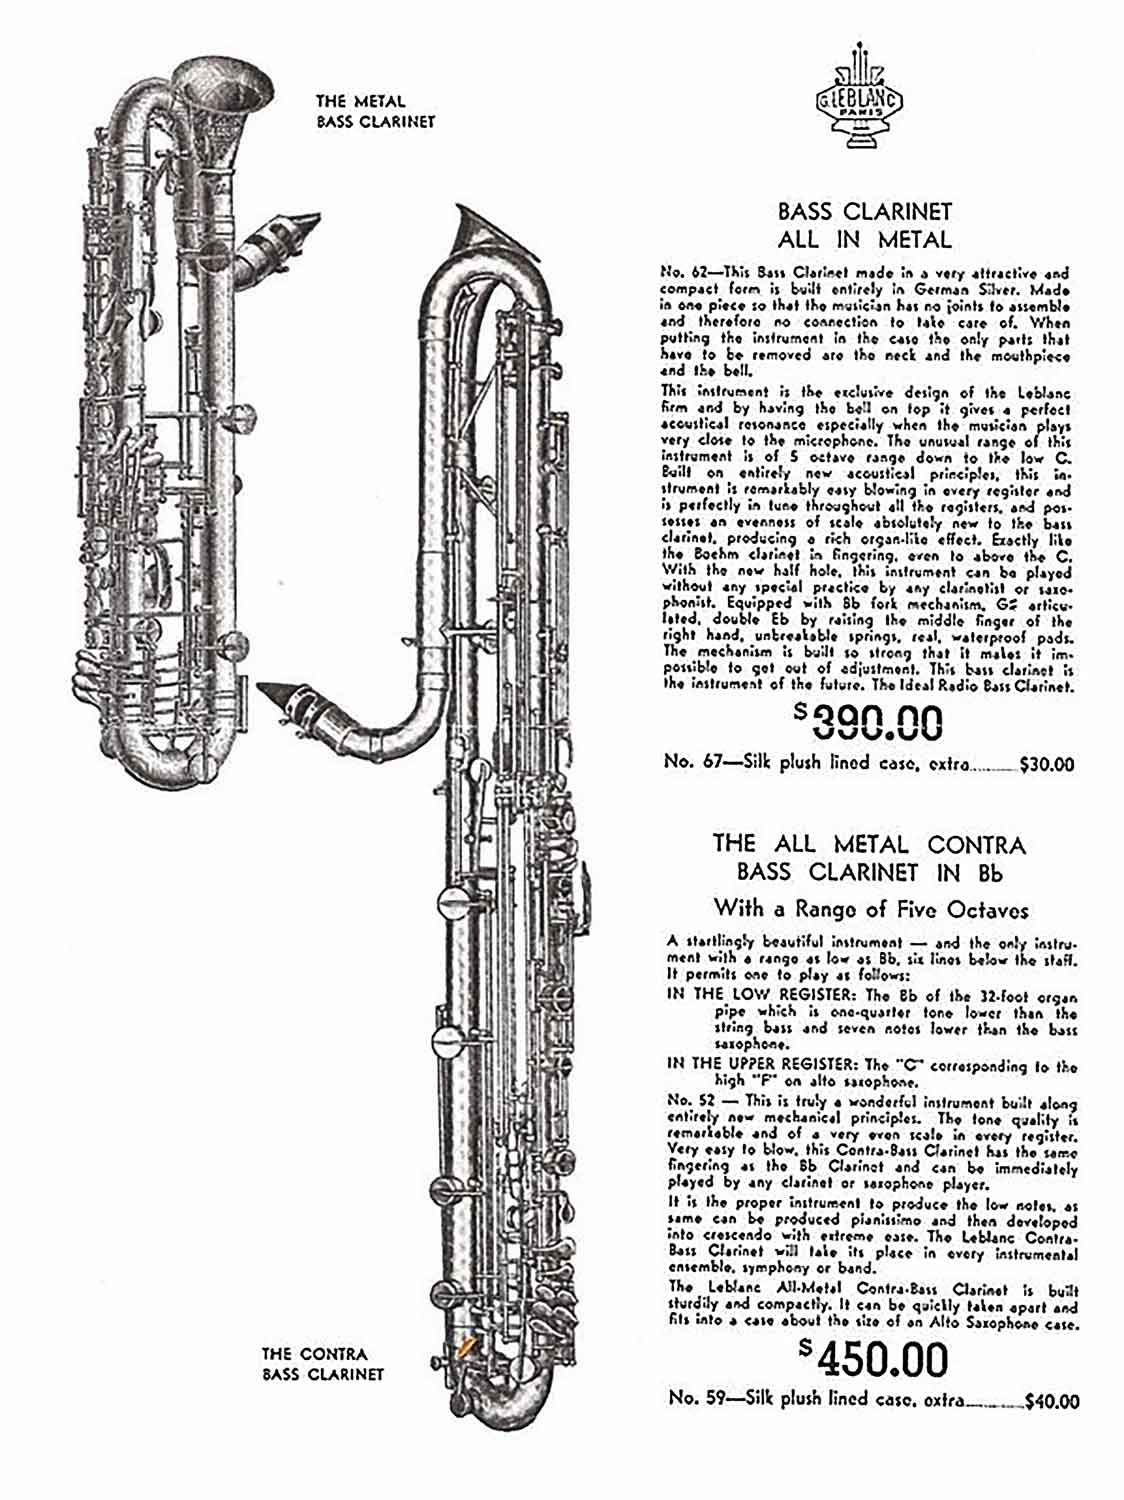 Valentin cases : Publicité USA des clarinette basse et contrebasse métal paperclip Leblanc